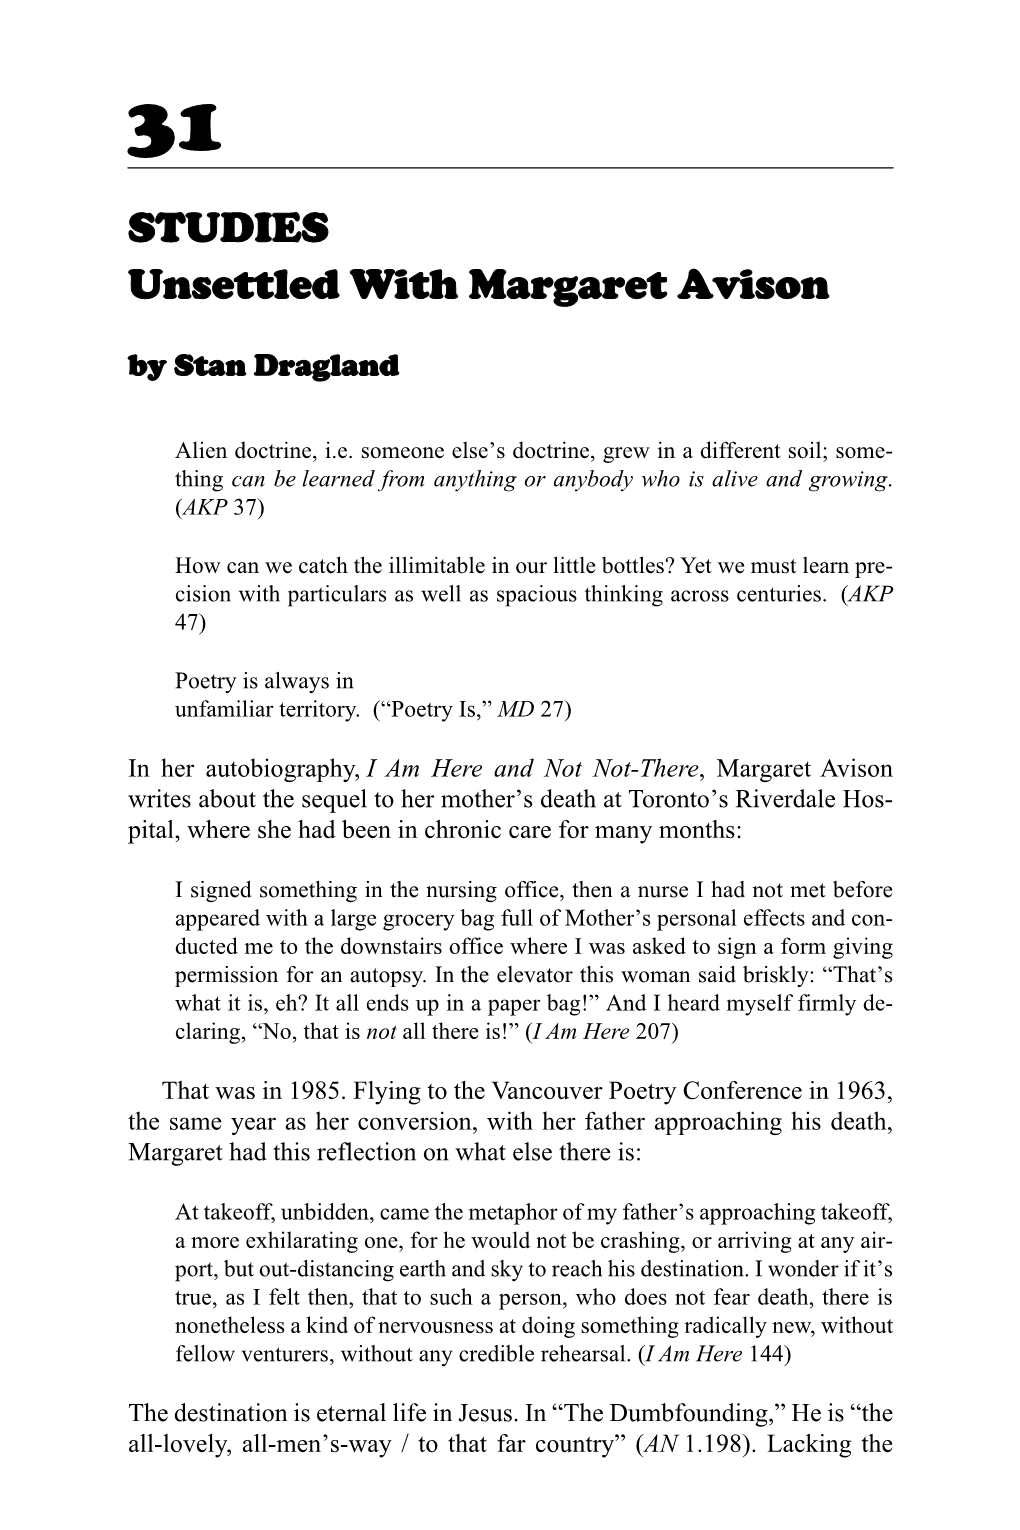 STUDIES Unsettled with Margaret Avison